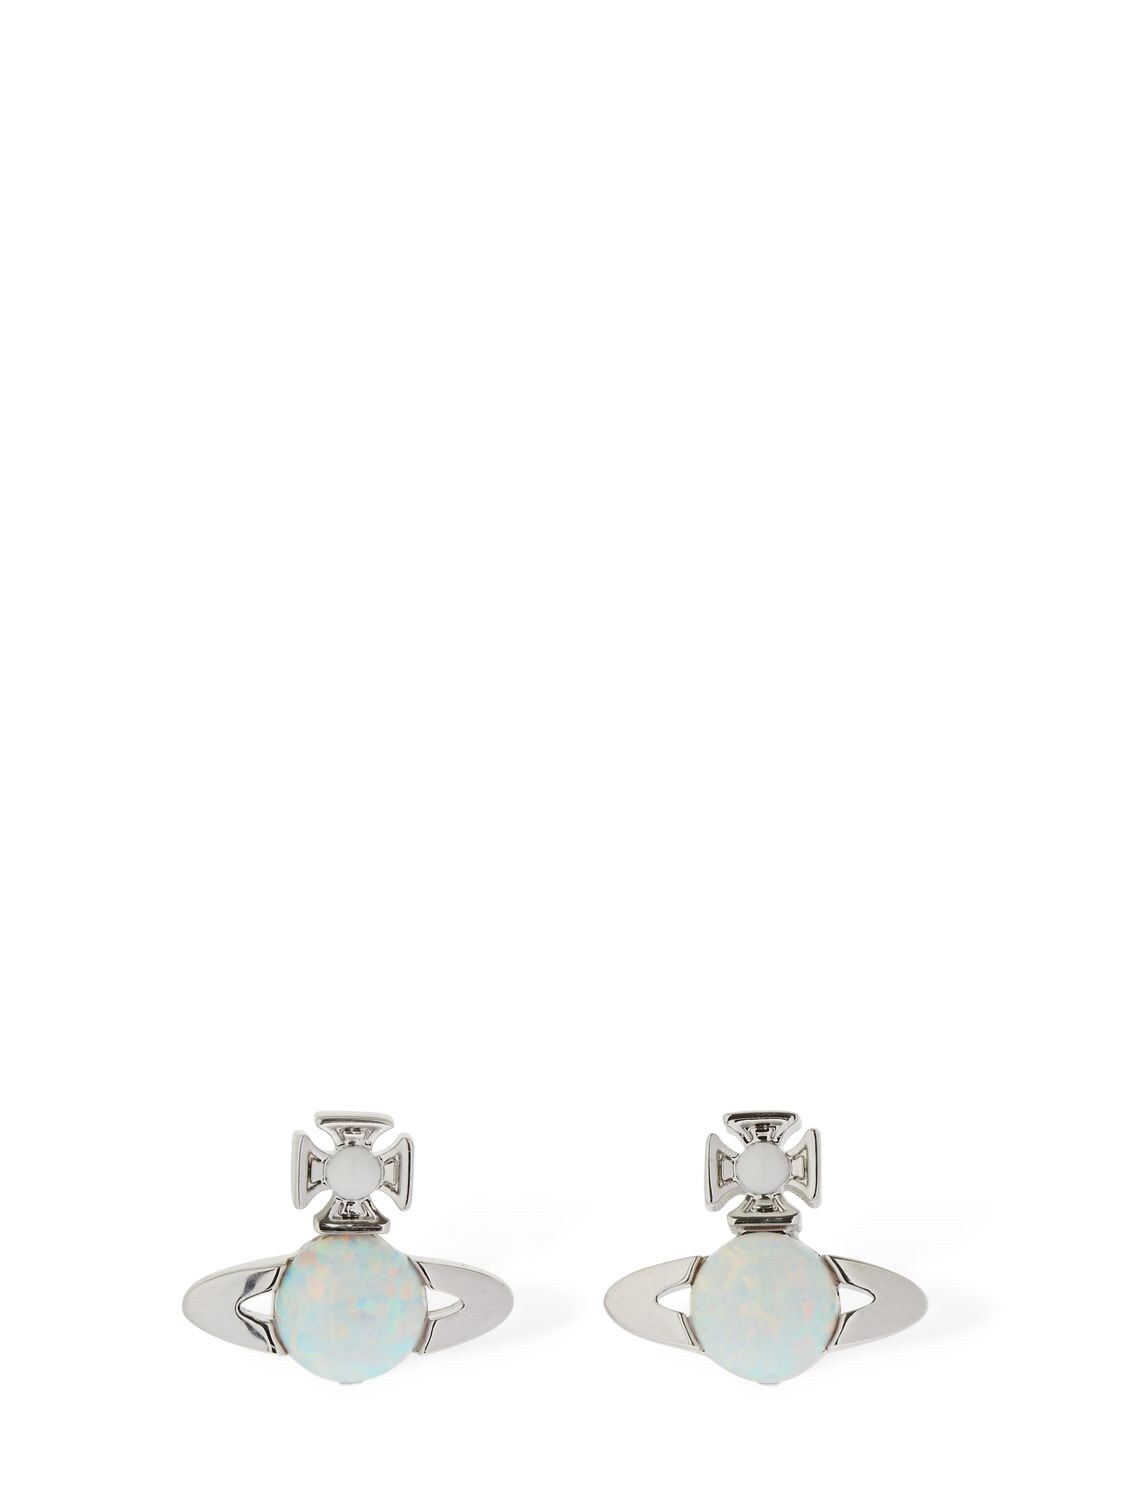 Vivienne Westwood Isabelitta Bas Relief Stud Earrings In Silver,multi